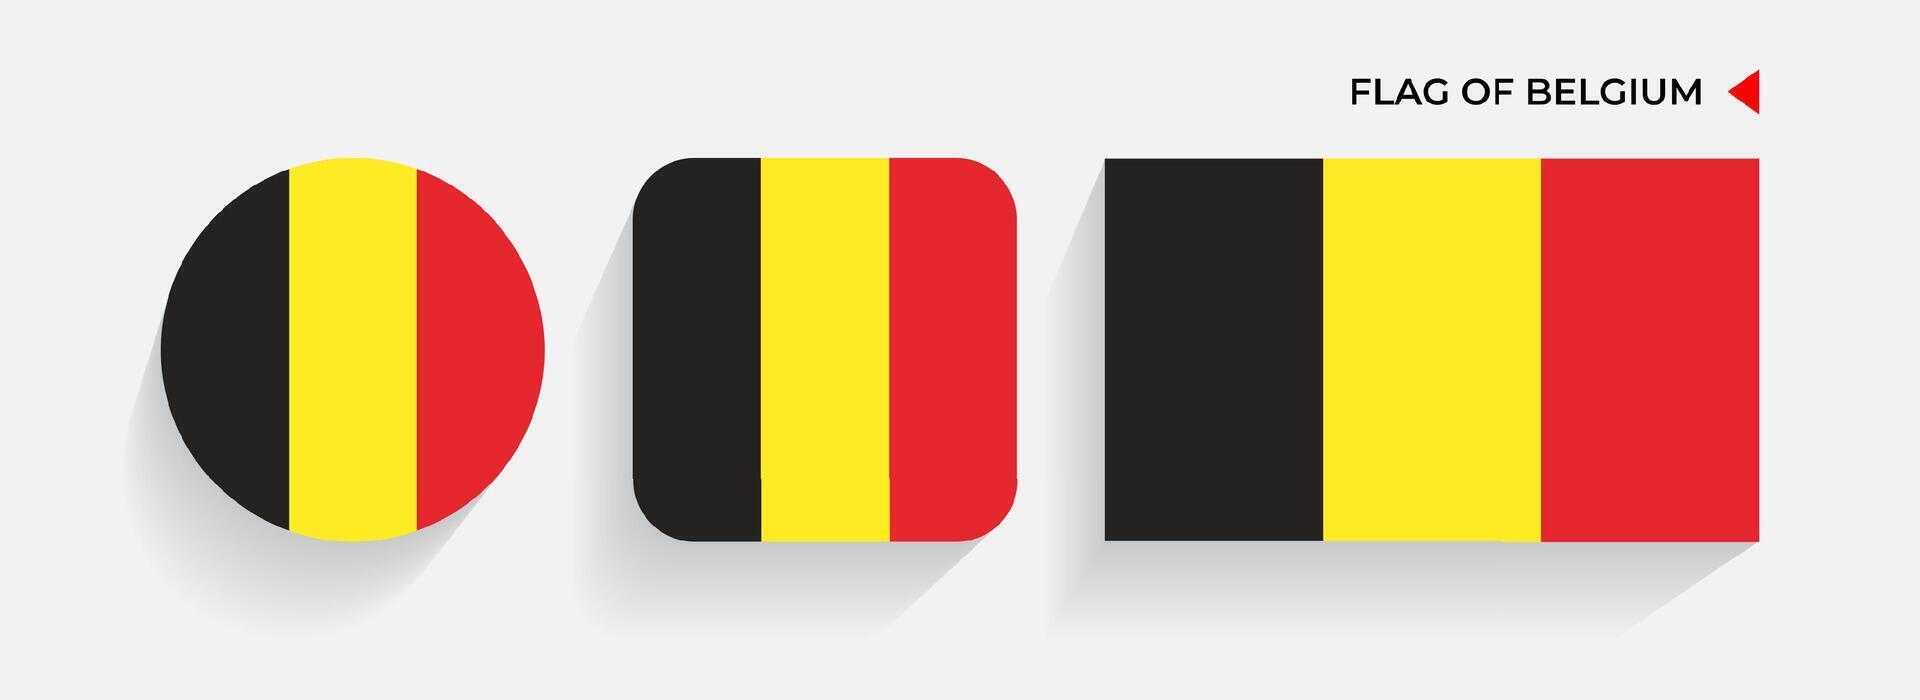 belgien flaggor anordnad i runda, fyrkant och rektangulär former vektor